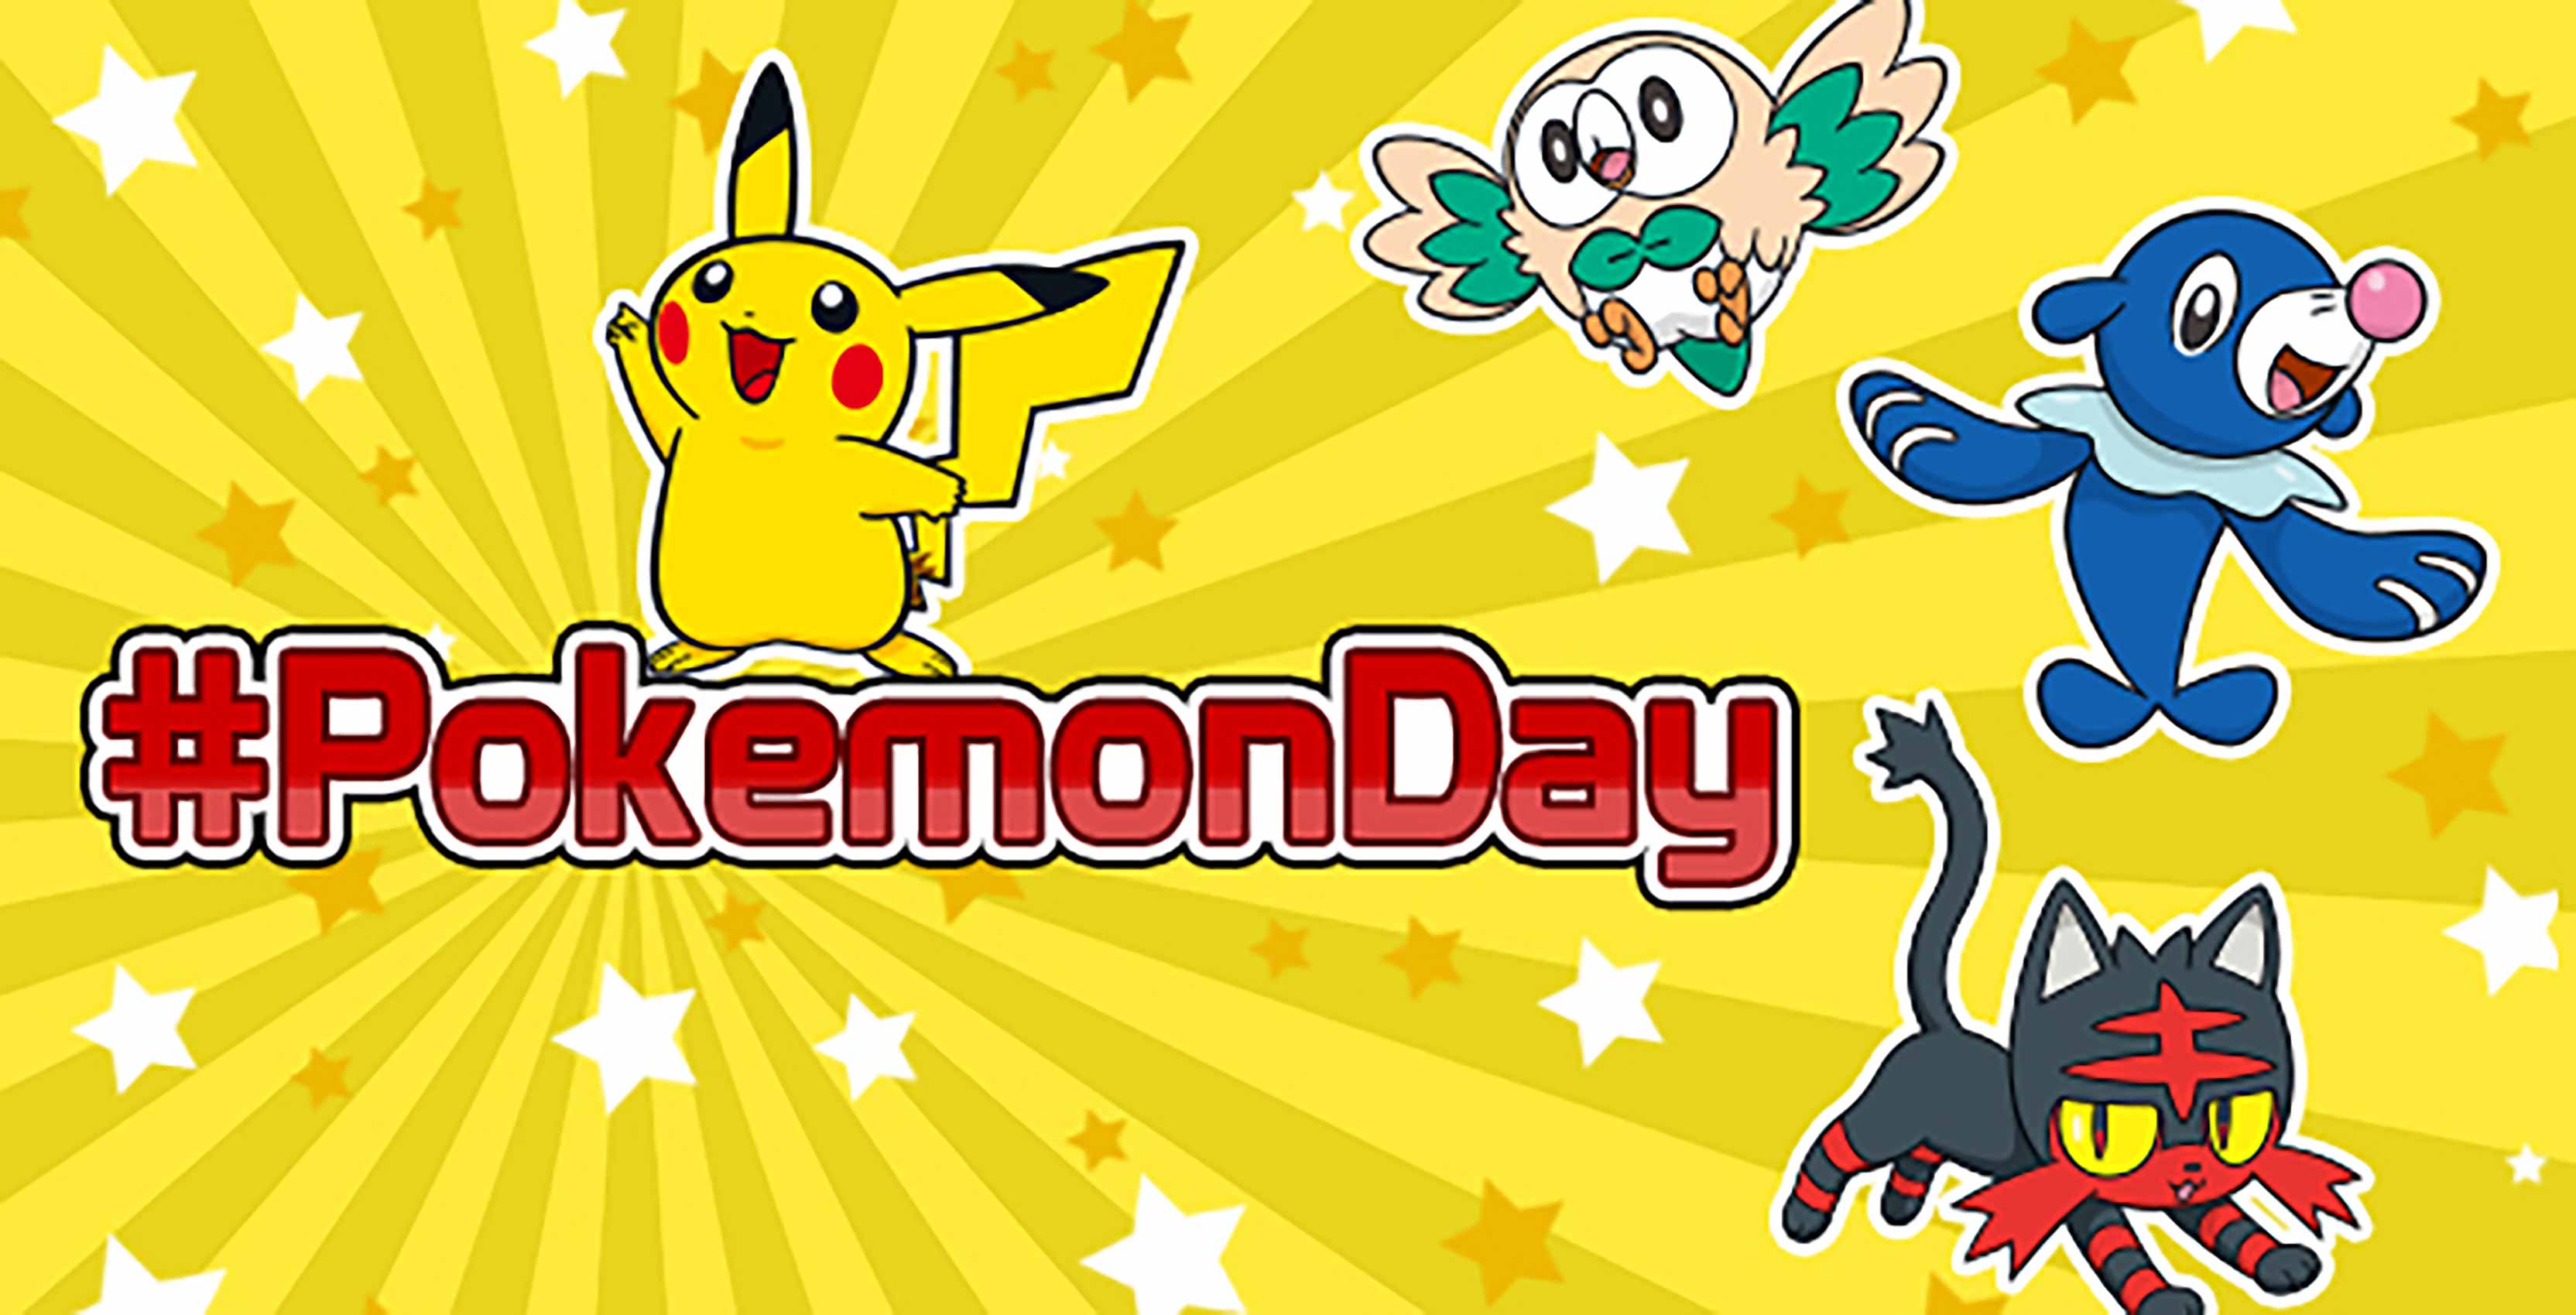 Celebrate Pokémon Day 2017